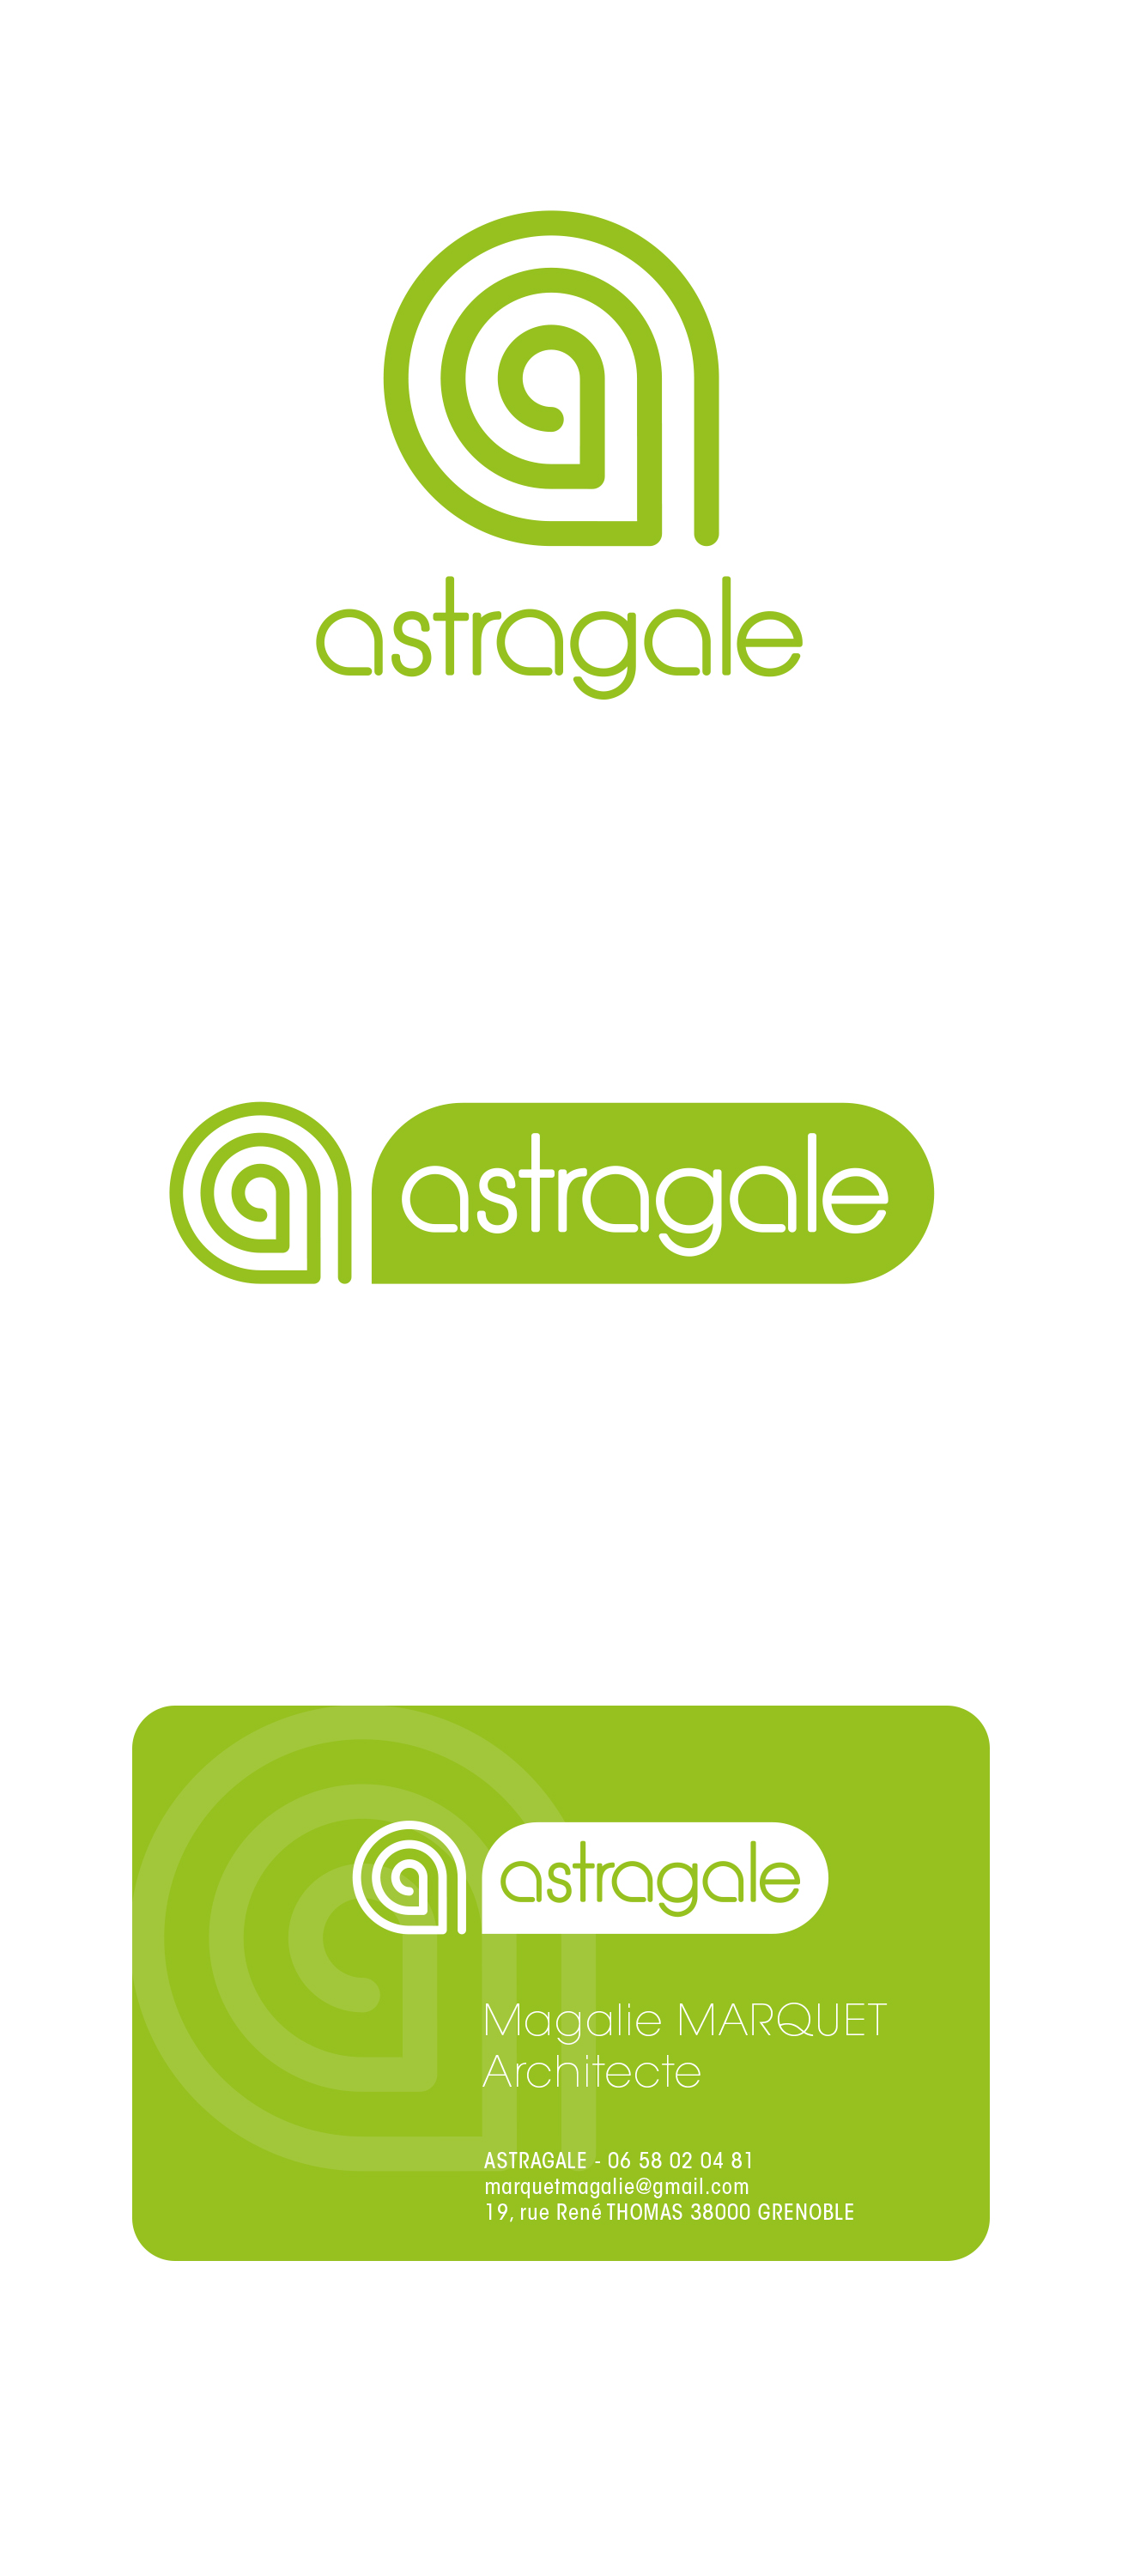 Astragale Architecture_Logo et carte